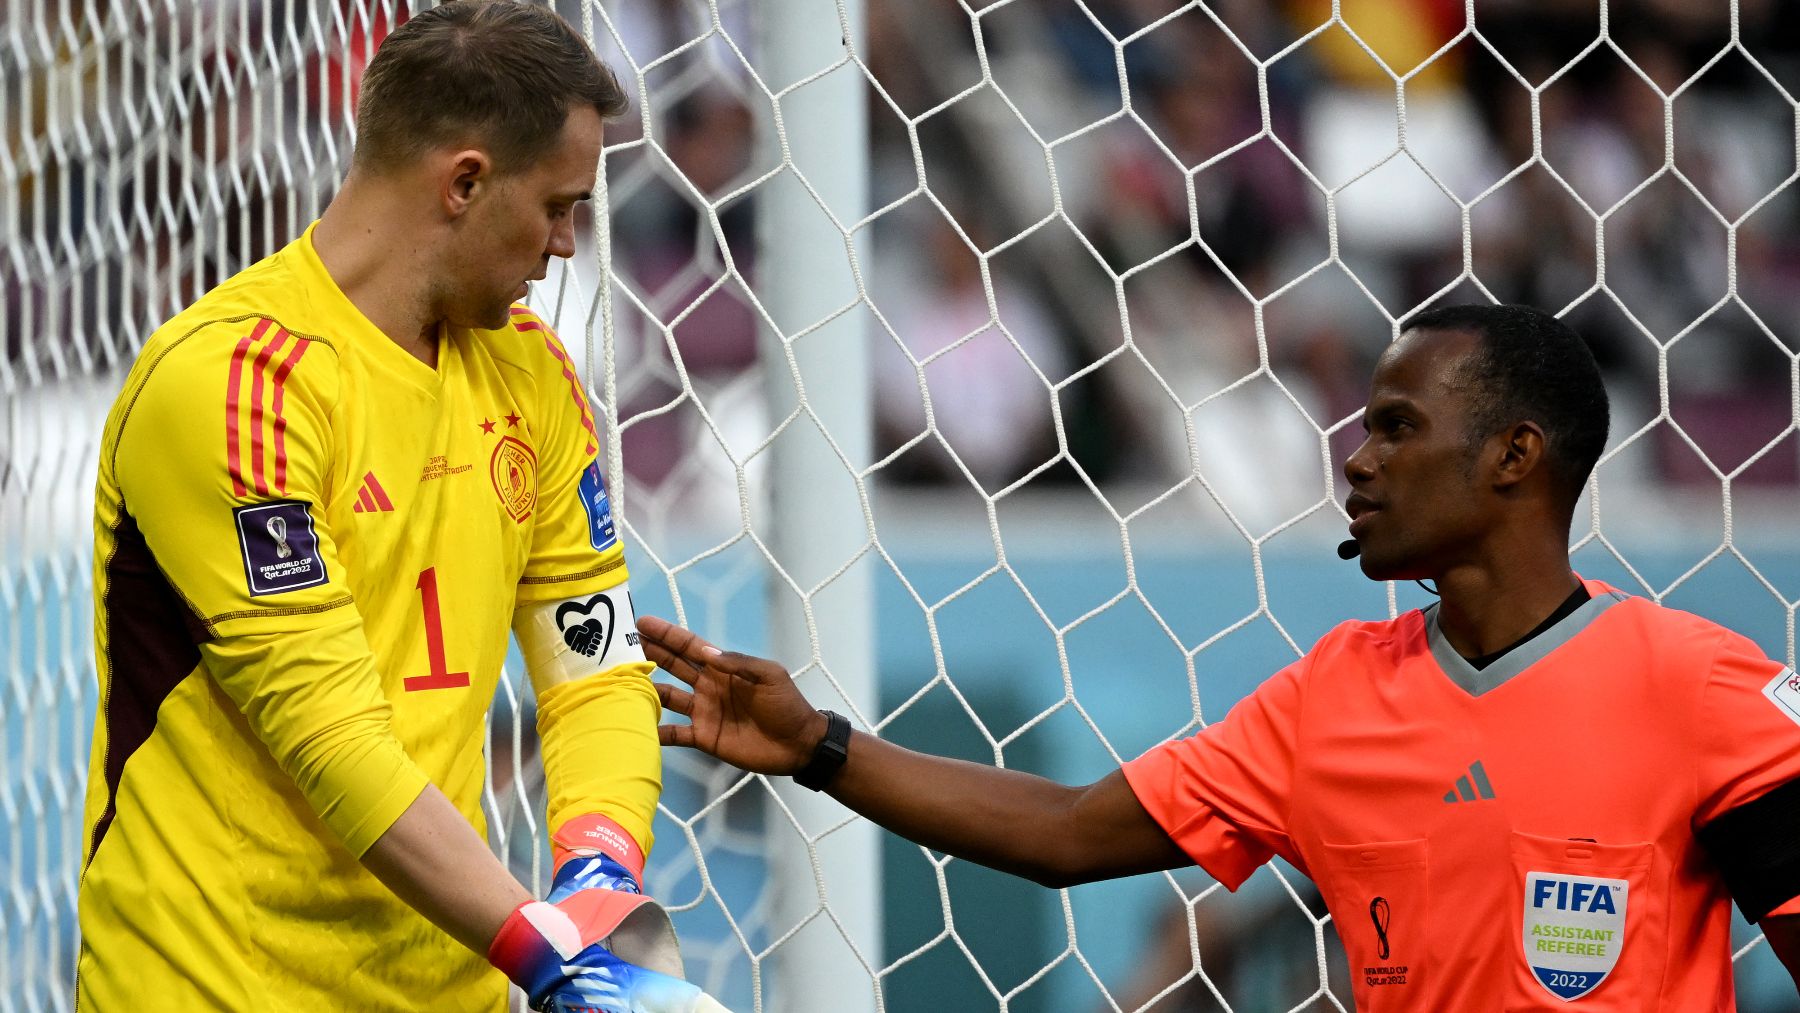 El árbitro le pide a Neuer que le muestre el brazalete (AFP)